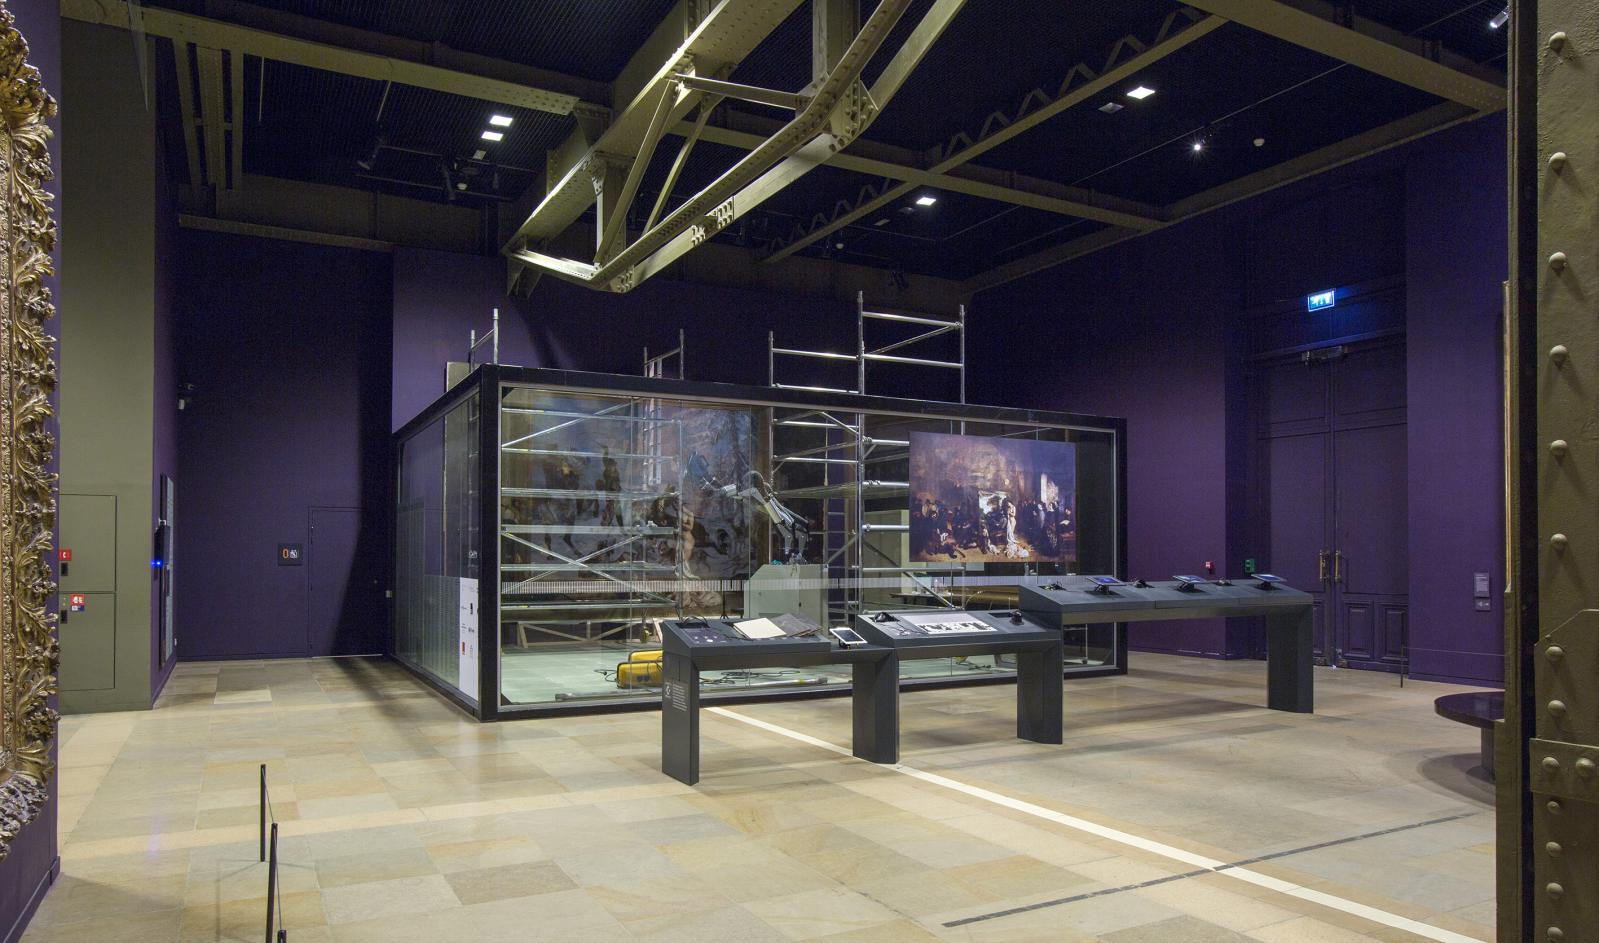 L’Atelier du peintre, de Gustave Courbet (1819-1877), en restauration dans sa bulle de verre au musée d’Orsay.